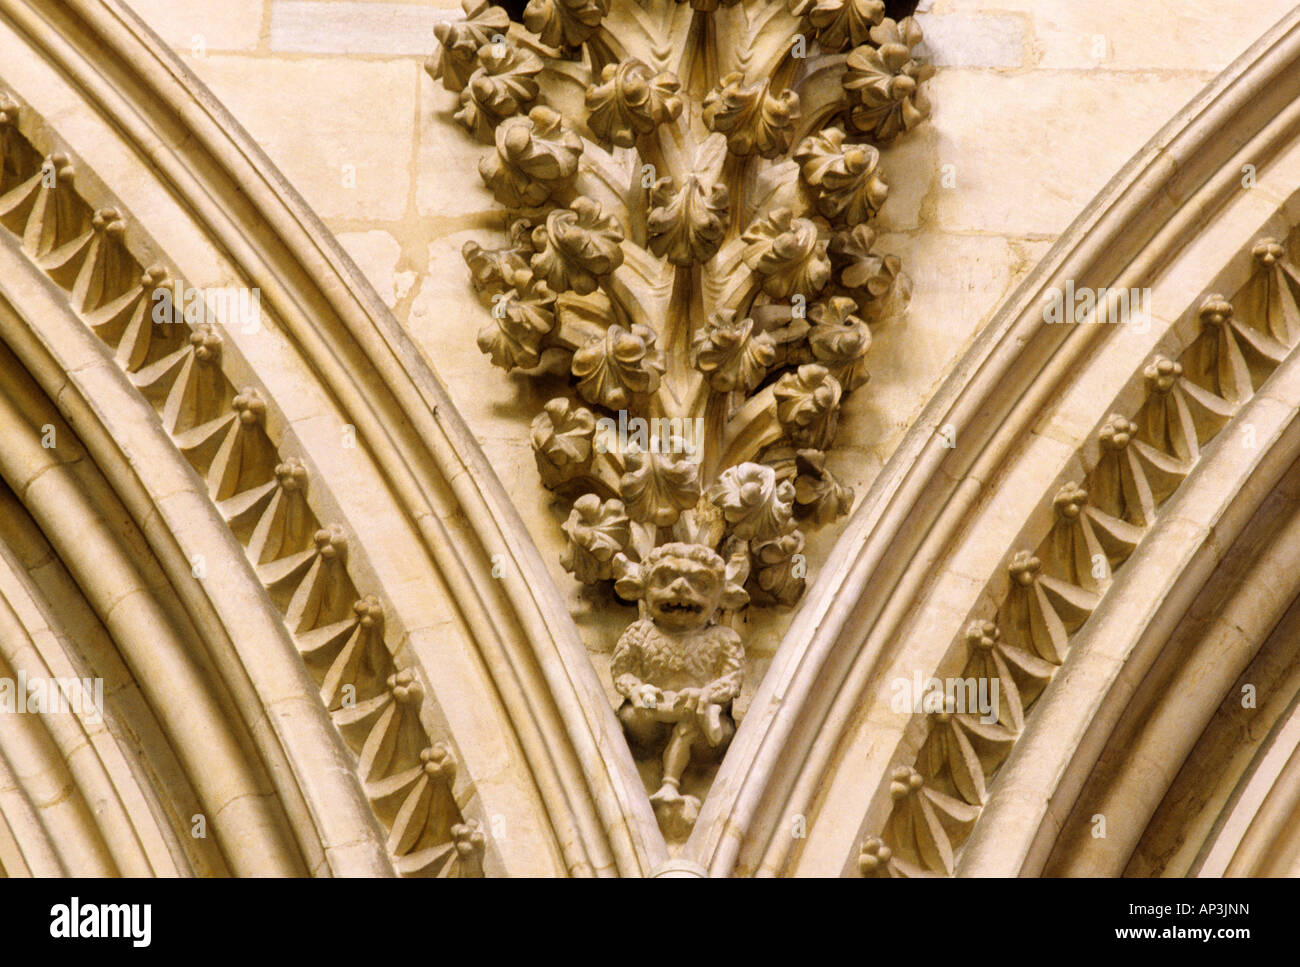 La Cathédrale de Lincoln Wood Sculpture sur pierre Lincolnshire Angleterre médiévale UK créature mythique mythe français de l'intérieur des cathédrales Banque D'Images